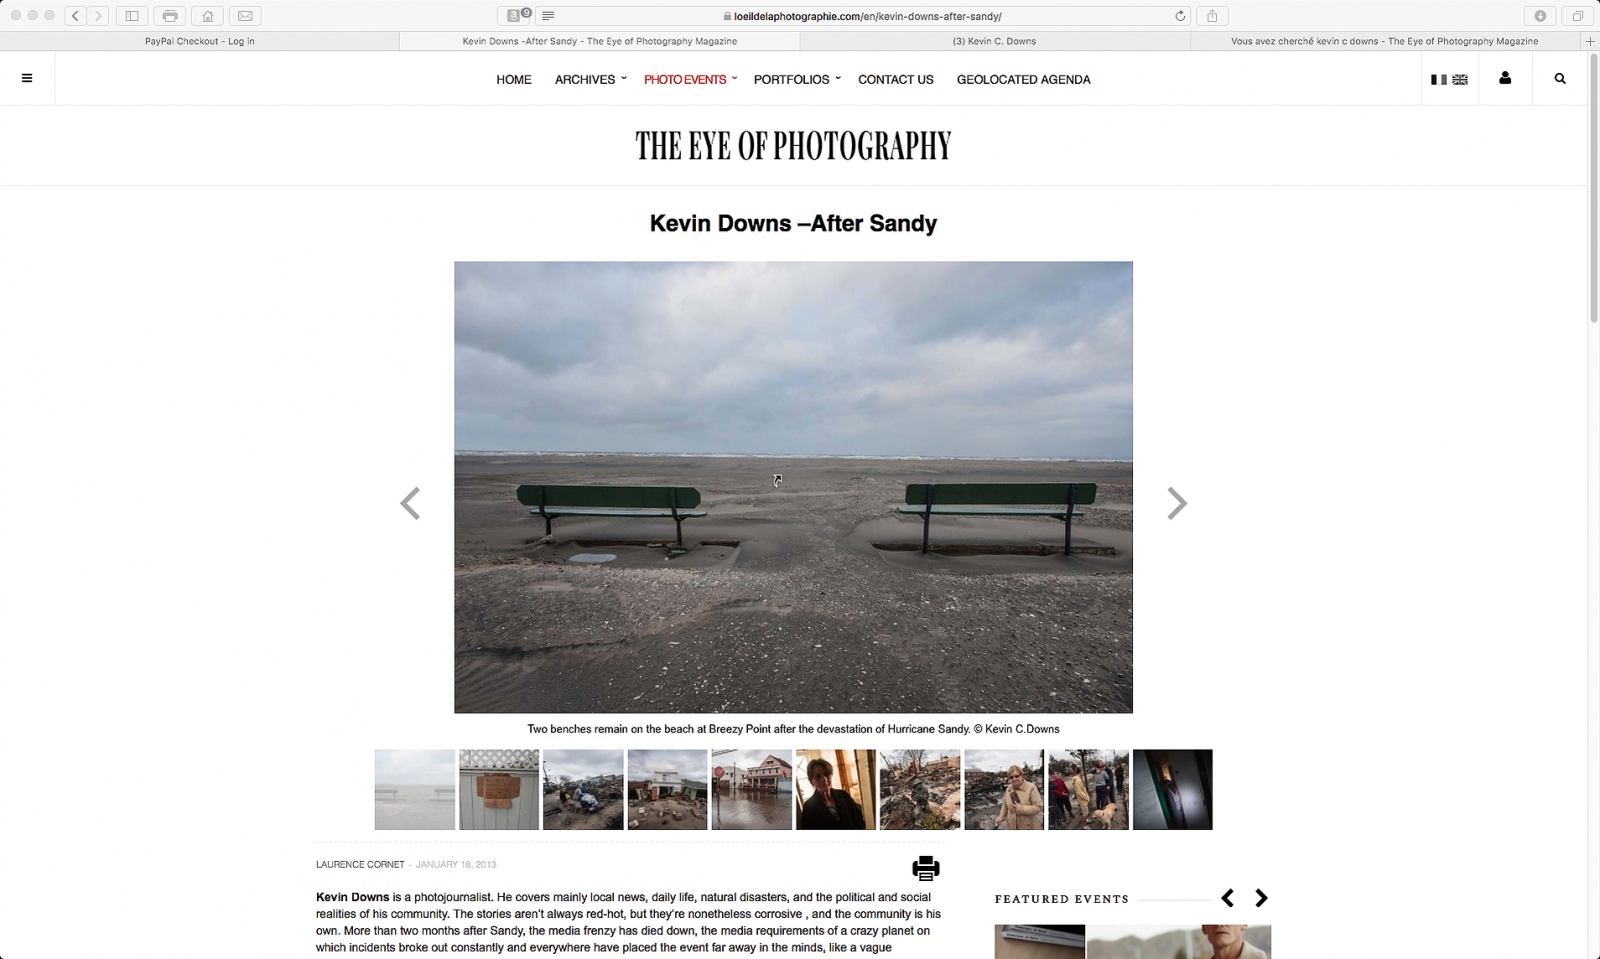 Thumbnail of After Sandy/L'Å’il de la Photographie Magazine